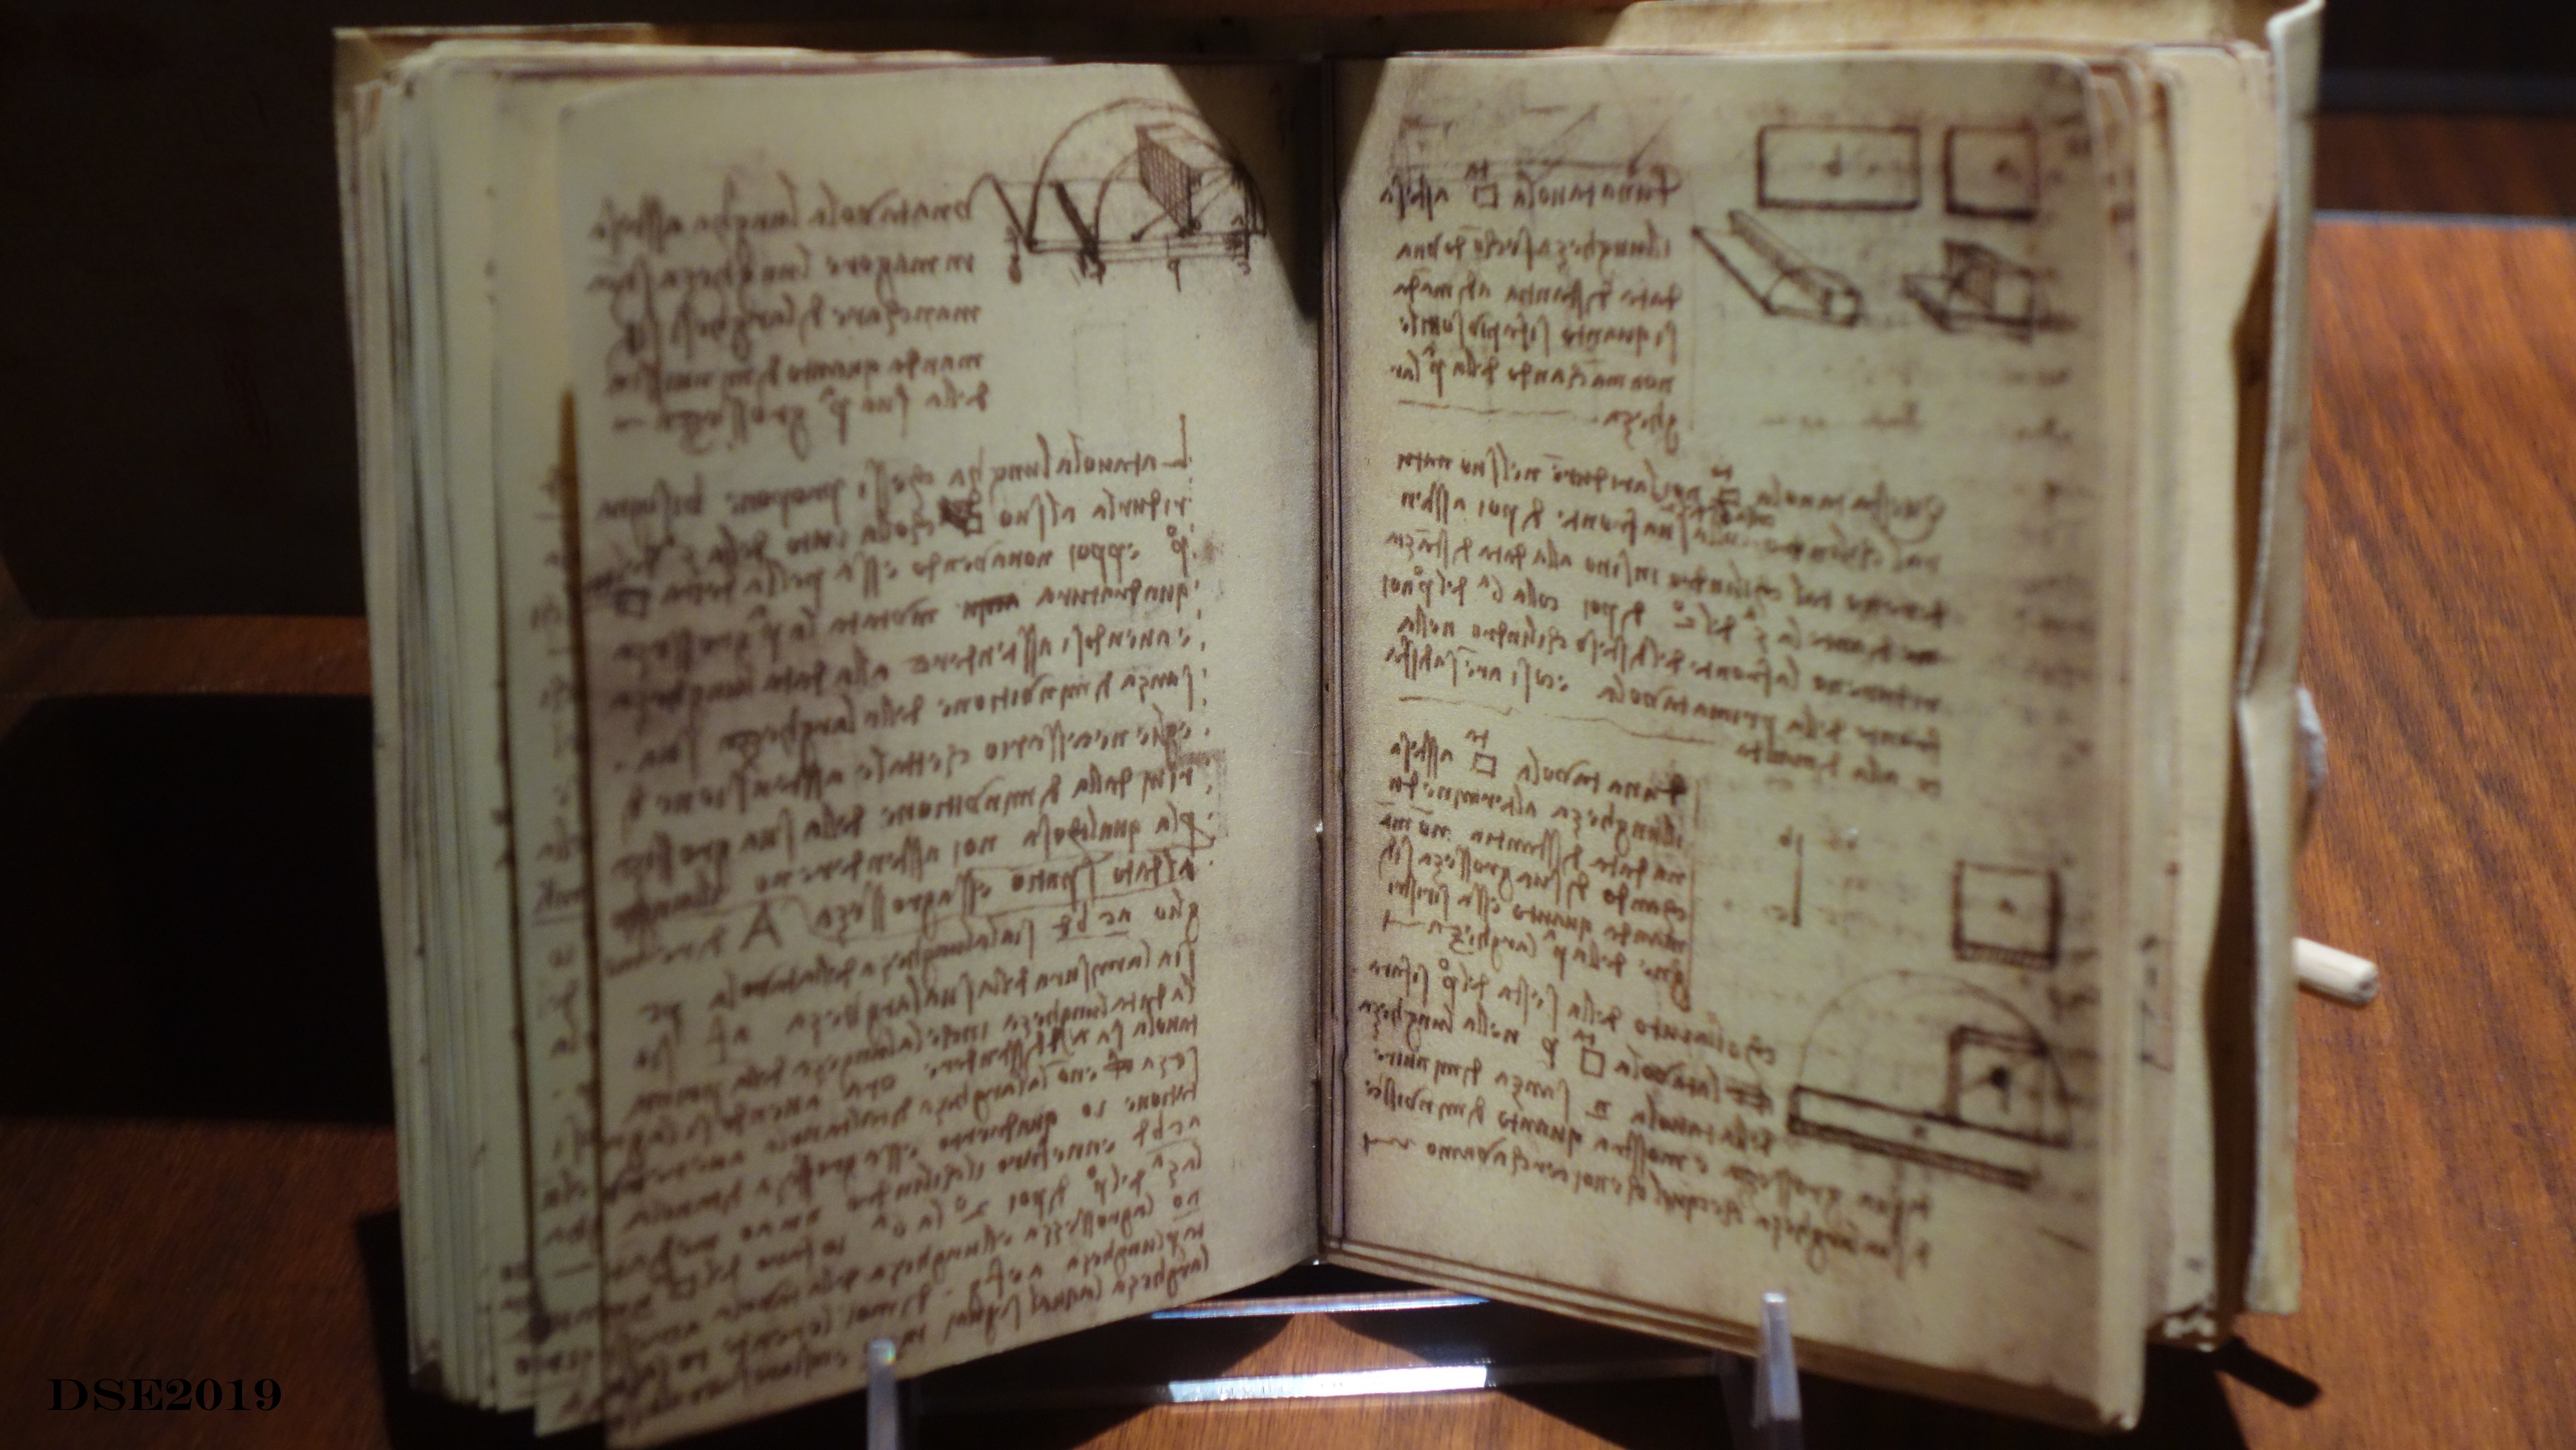 Codex - Forster III, Serie de manuscritos que incluyen estudios de geometria, pesos y maquinas hidraulicas.